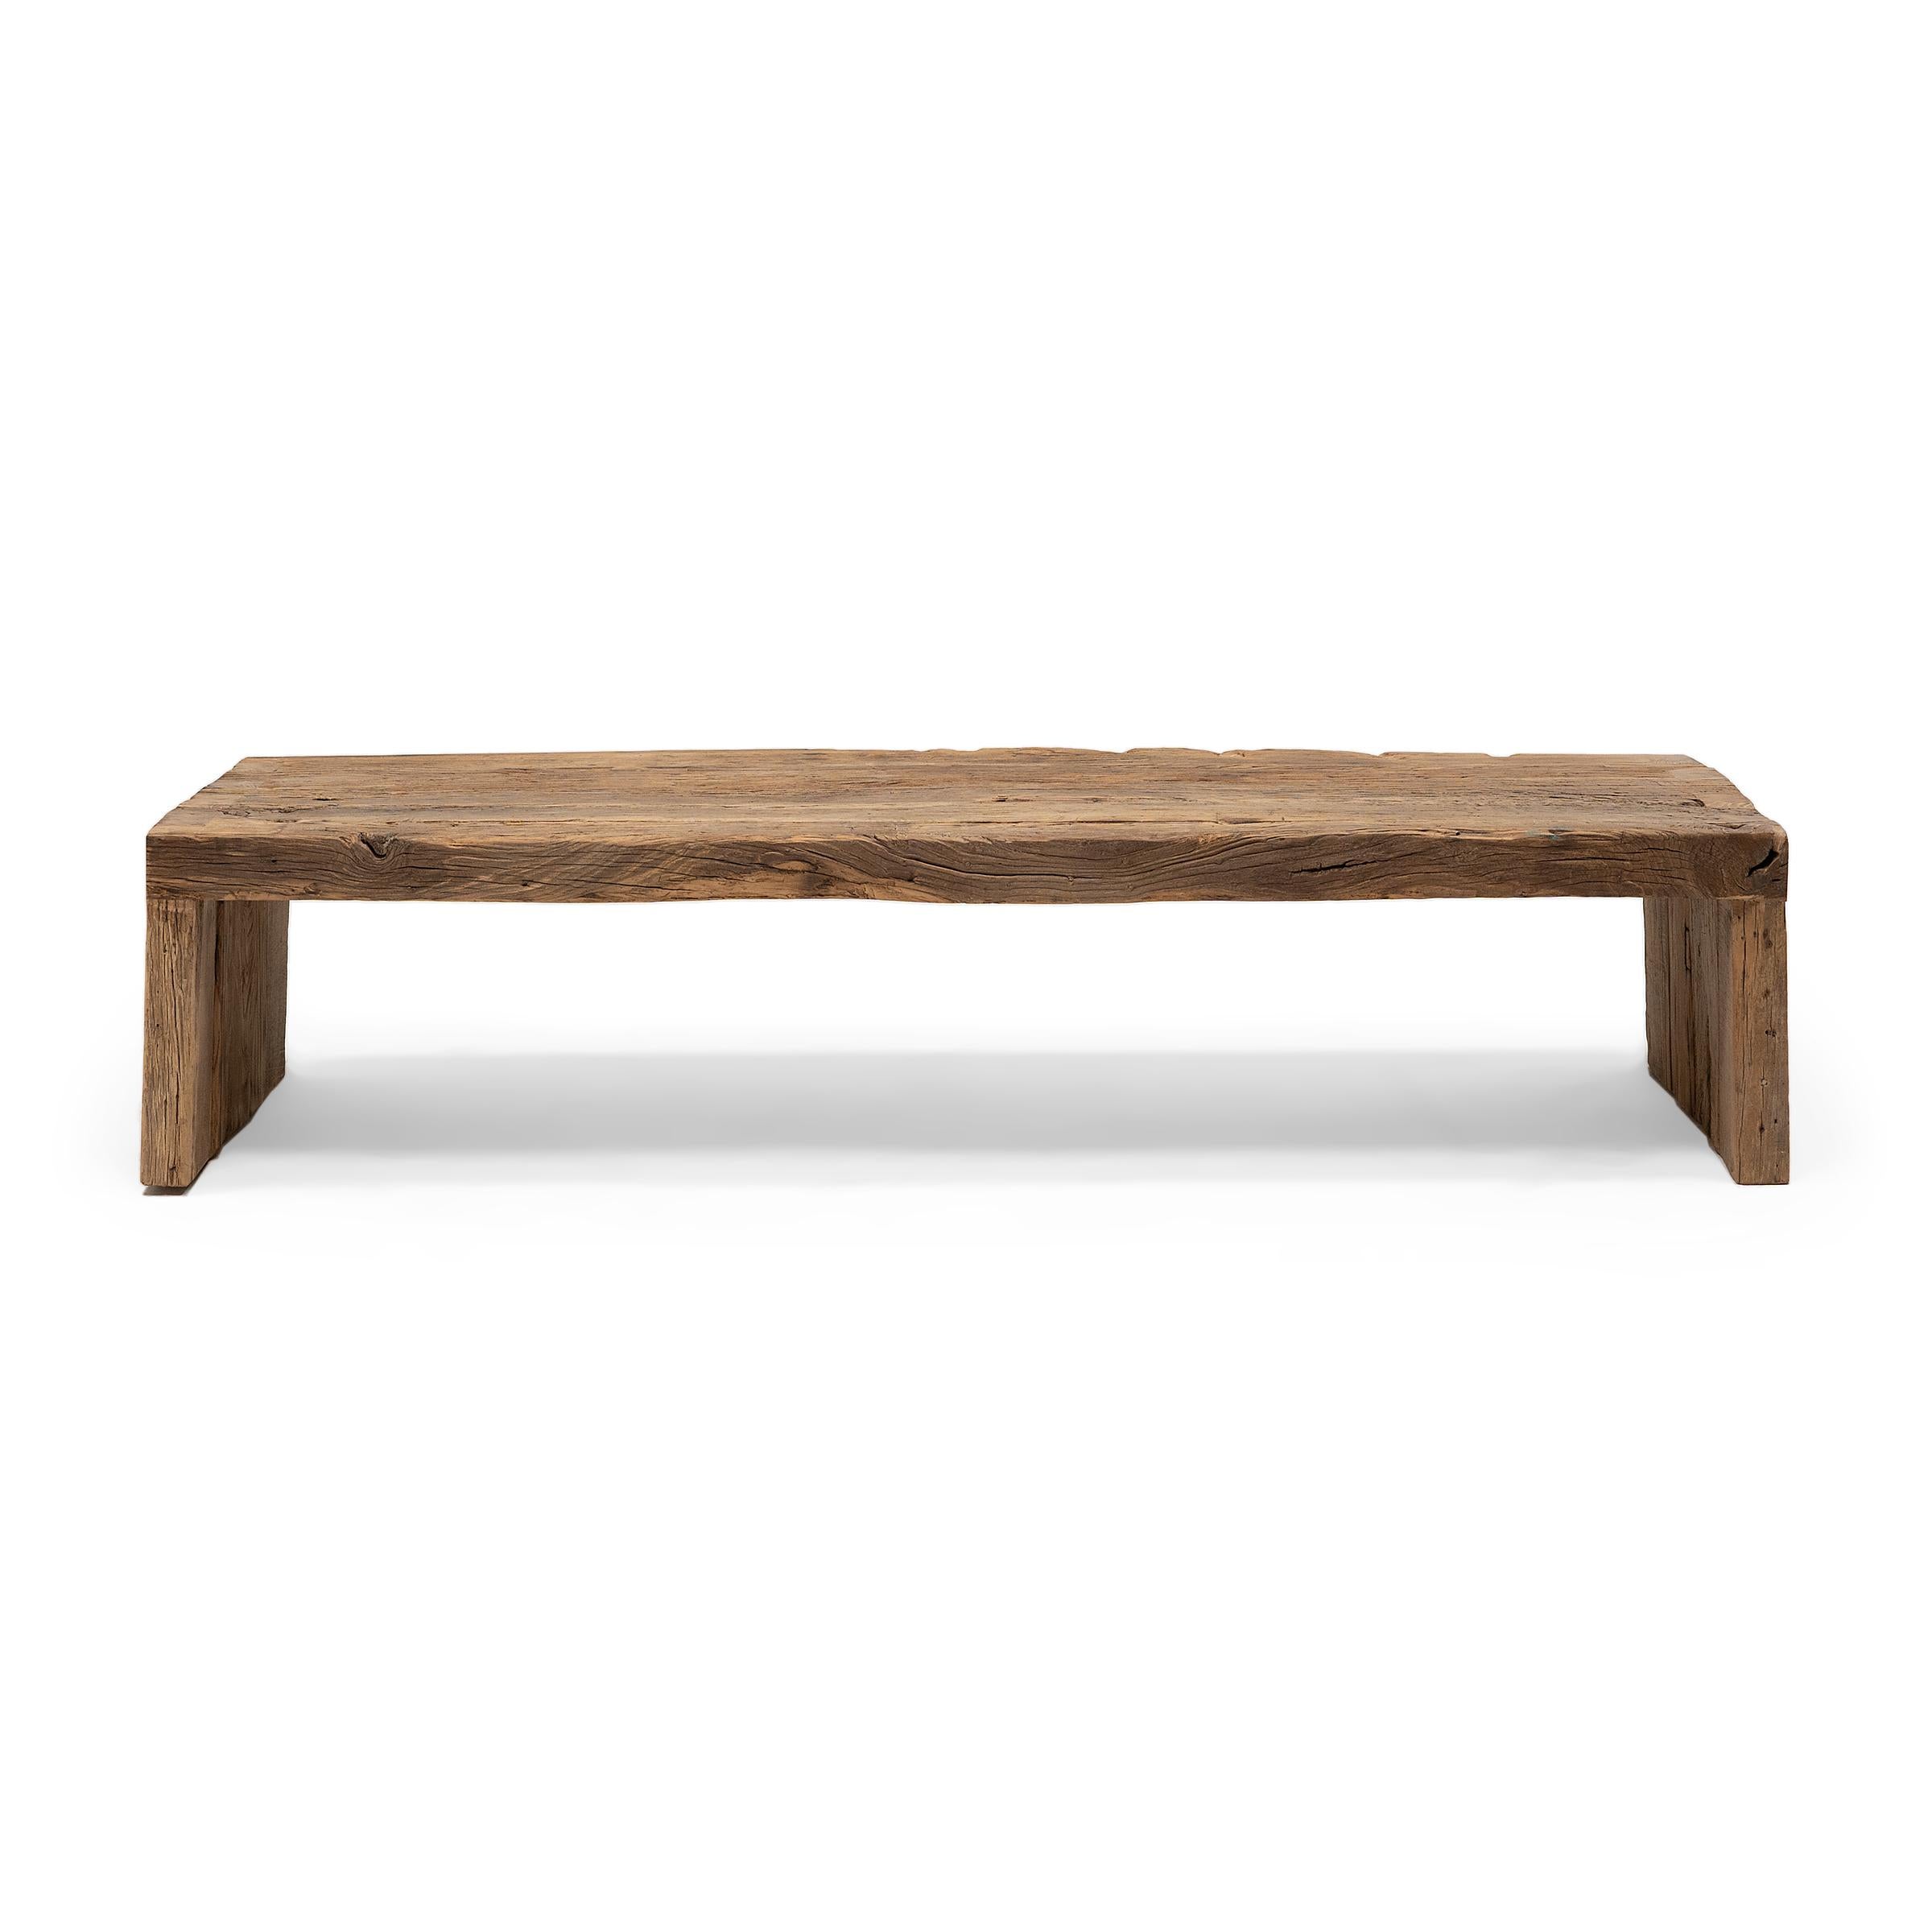 Cette table basse artisanale est une célébration du style wabi-sabi. Fabriquée en bois d'orme épais récupéré de l'architecture de la dynastie Qing, la table présente un design minimaliste en cascade et est laissée brute pour préserver la beauté